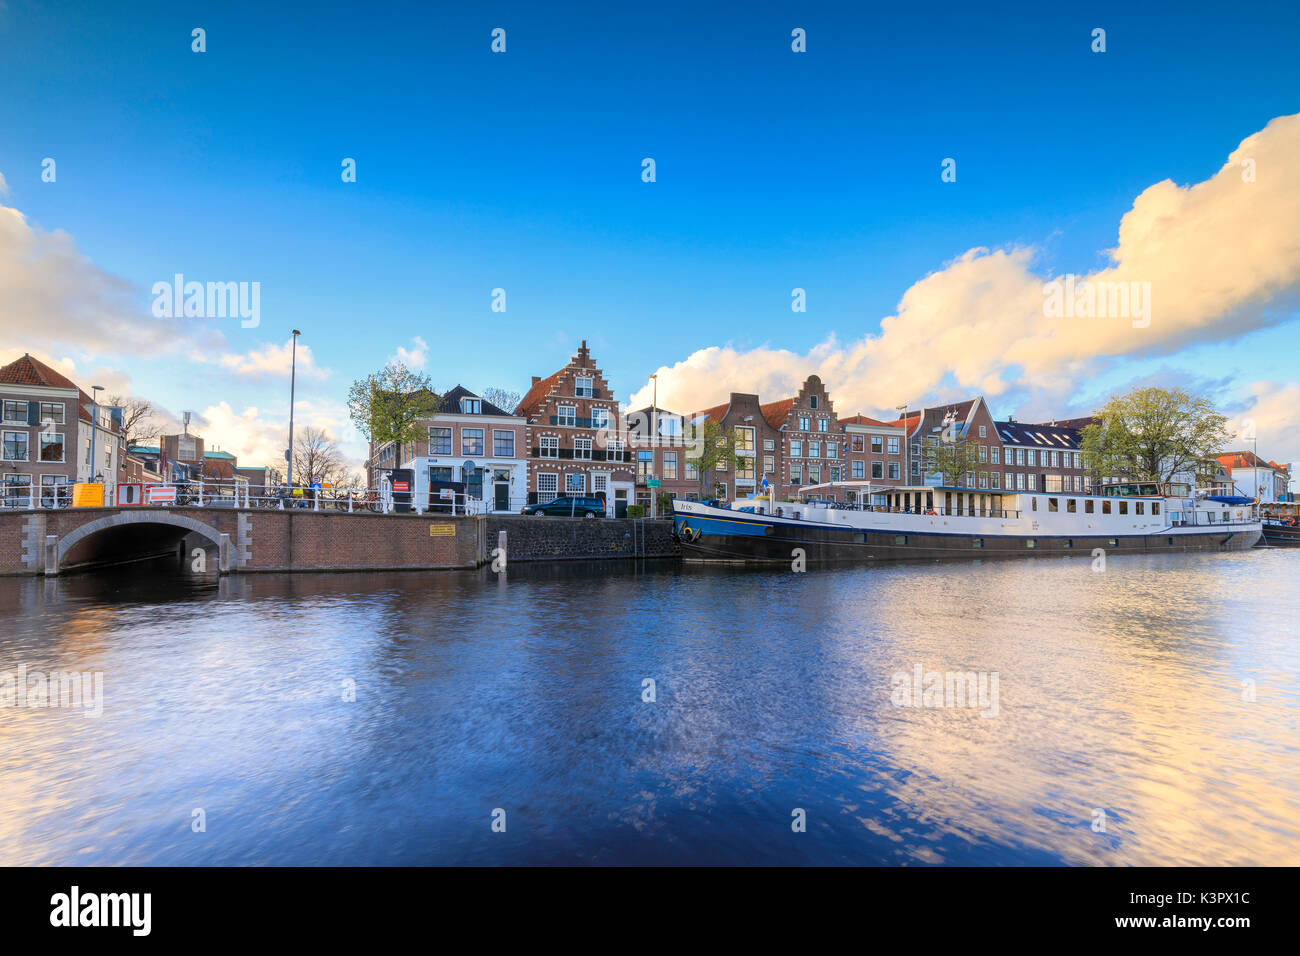 Cielo blu e nuvole sul case tipiche riflessa nel canale del fiume Spaarne Haarlem Olanda settentrionale dei Paesi Bassi in Europa Foto Stock